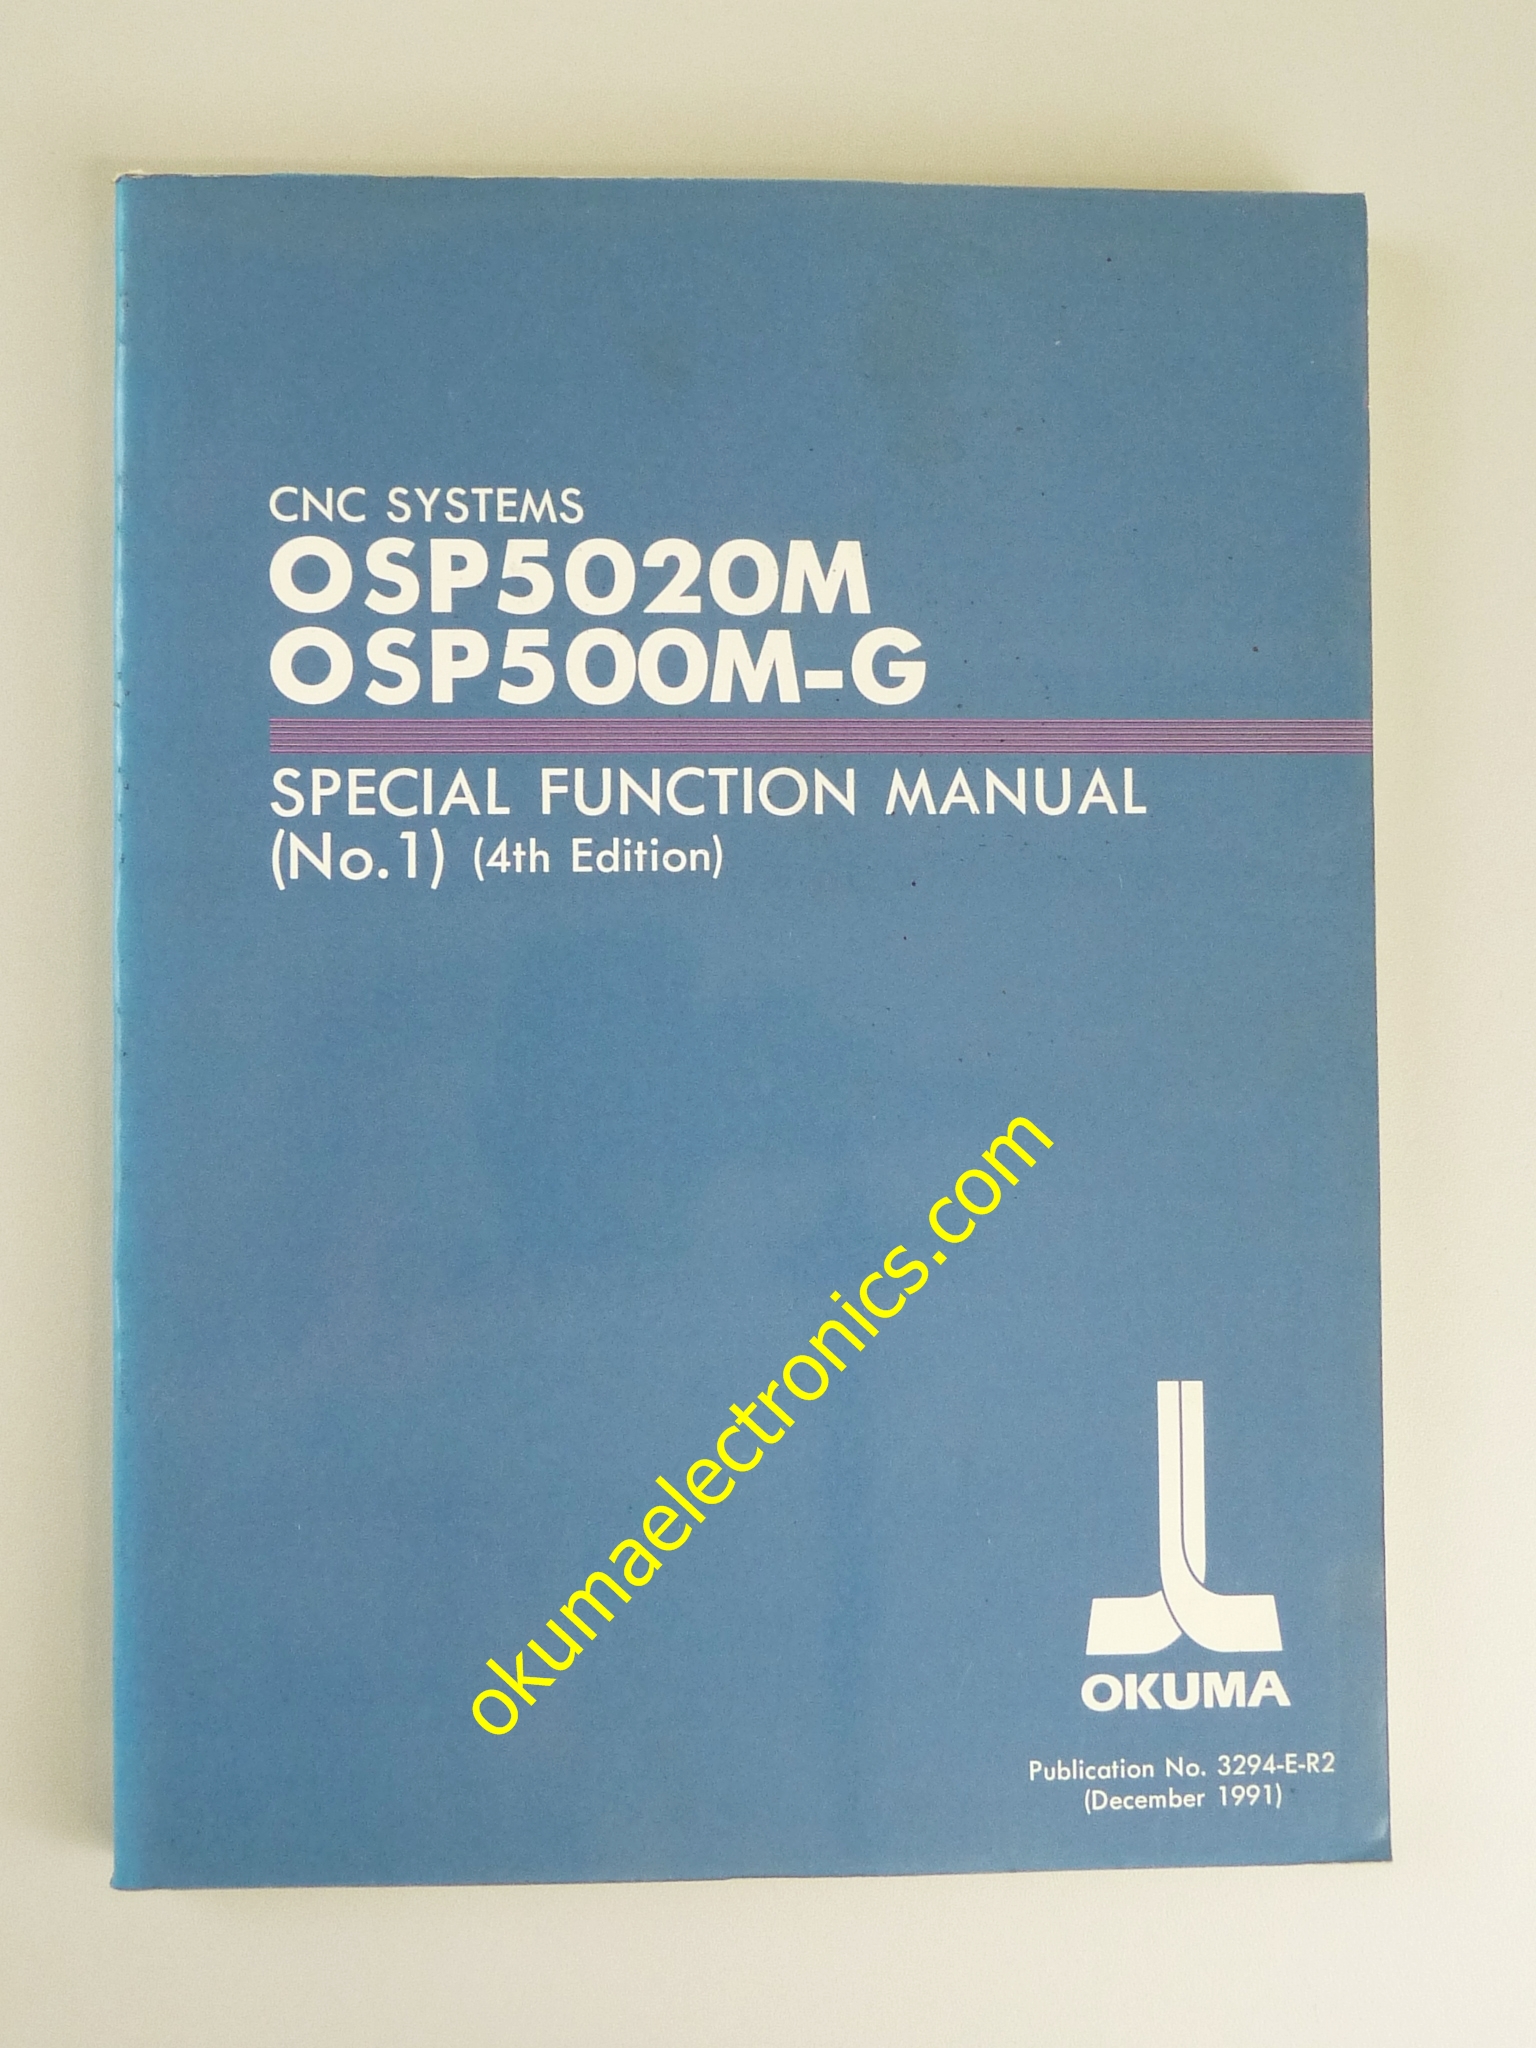 Okuma SpecialFunctionManual(No1)-4thEd-Dec91